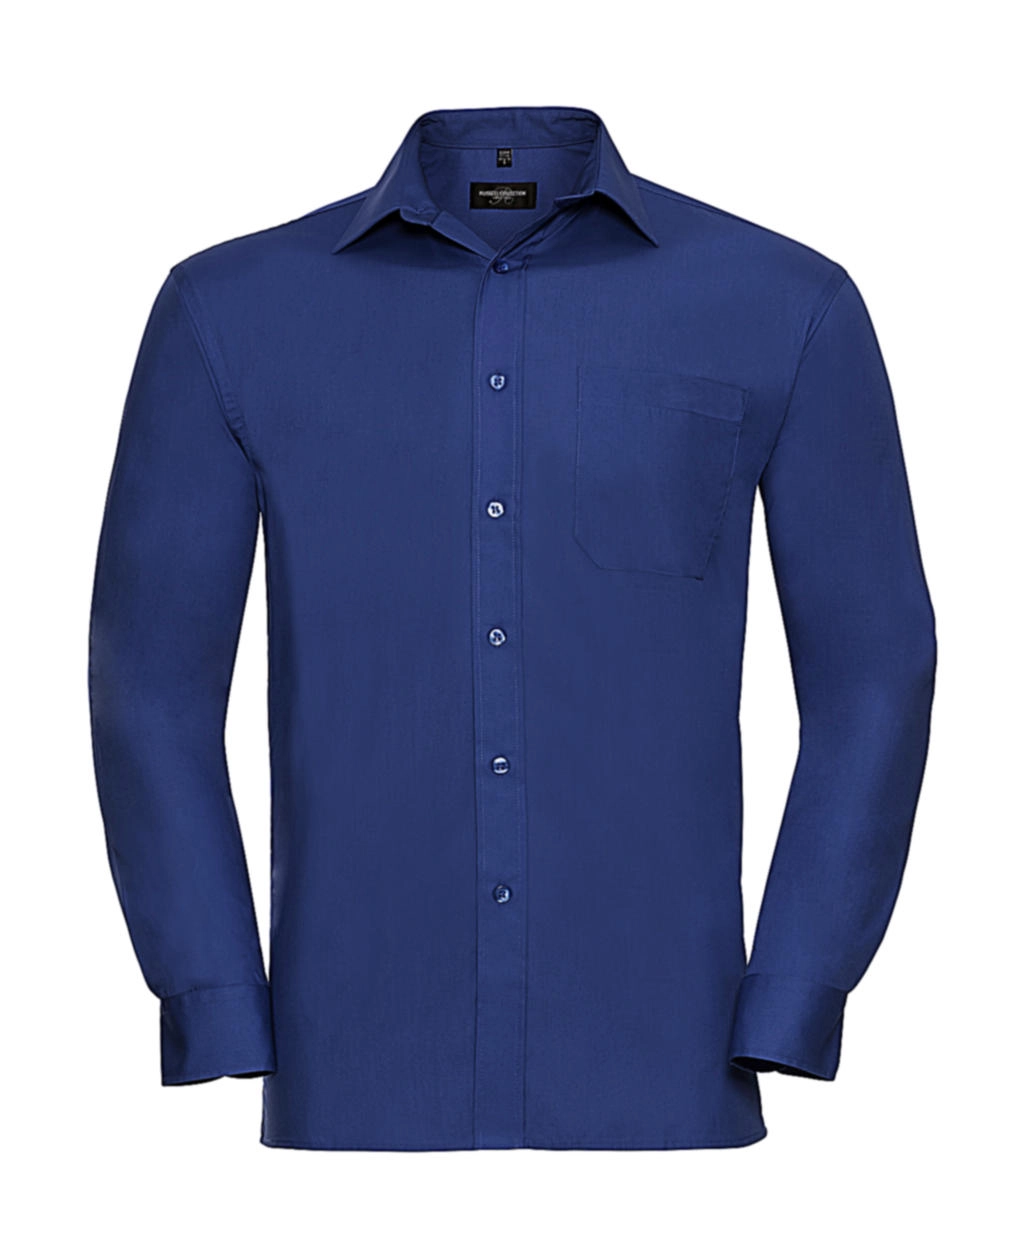 Cotton Poplin Shirt LS zum Besticken und Bedrucken in der Farbe Aztec Blue mit Ihren Logo, Schriftzug oder Motiv.